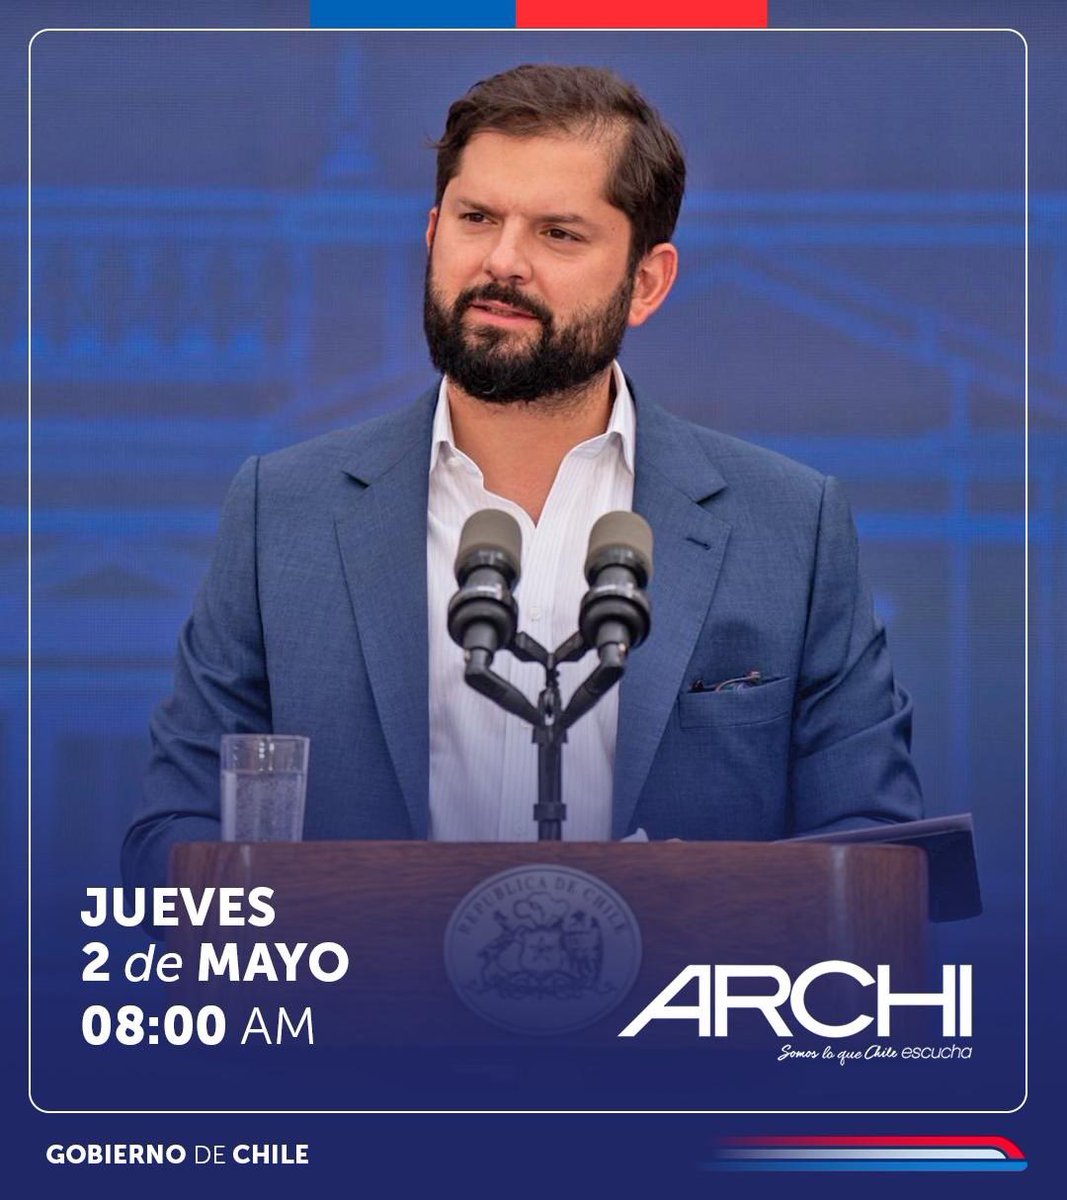 Este jueves 2 de mayo a las 8.00 AM, entrevista en vivo al Presidente de la República @GabrielBoric en más de 500 radios de @SomosArchi.